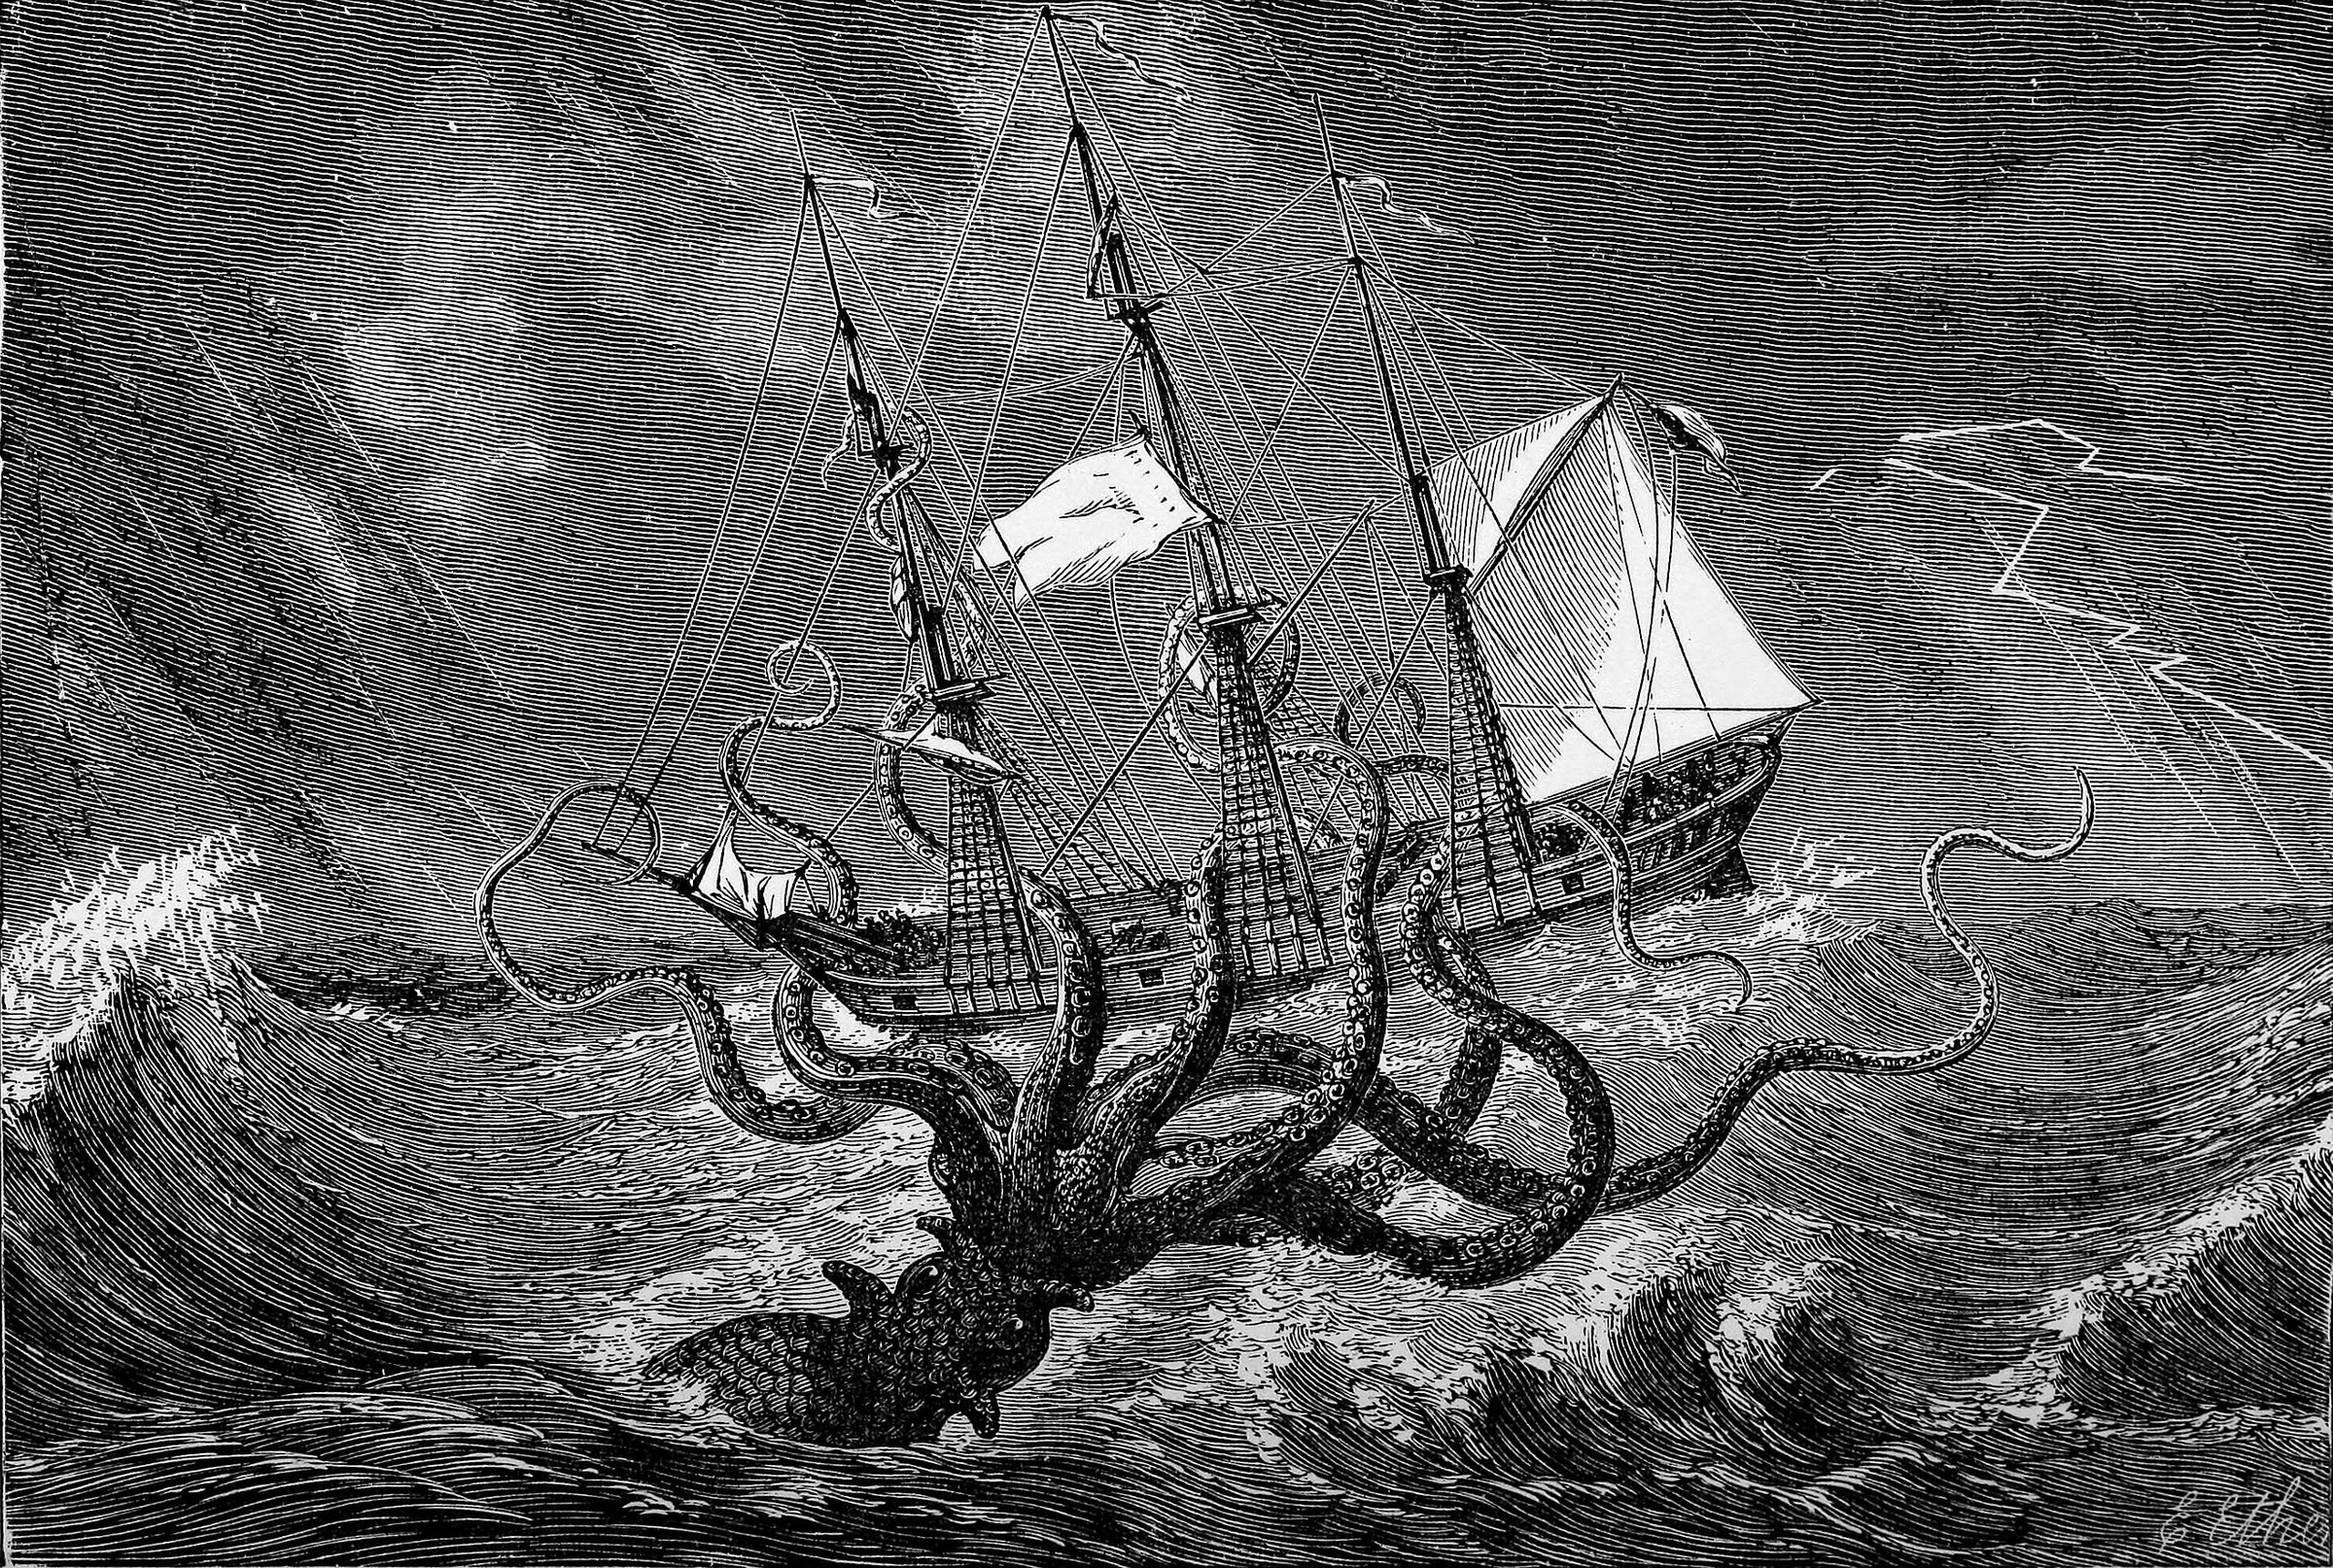 Гигантский кальмар атакует корабль. Гравюра из книги Эдгара Этерингтона "Морские чудовища: легенды и факты" (1887). Фото © Wikipedia